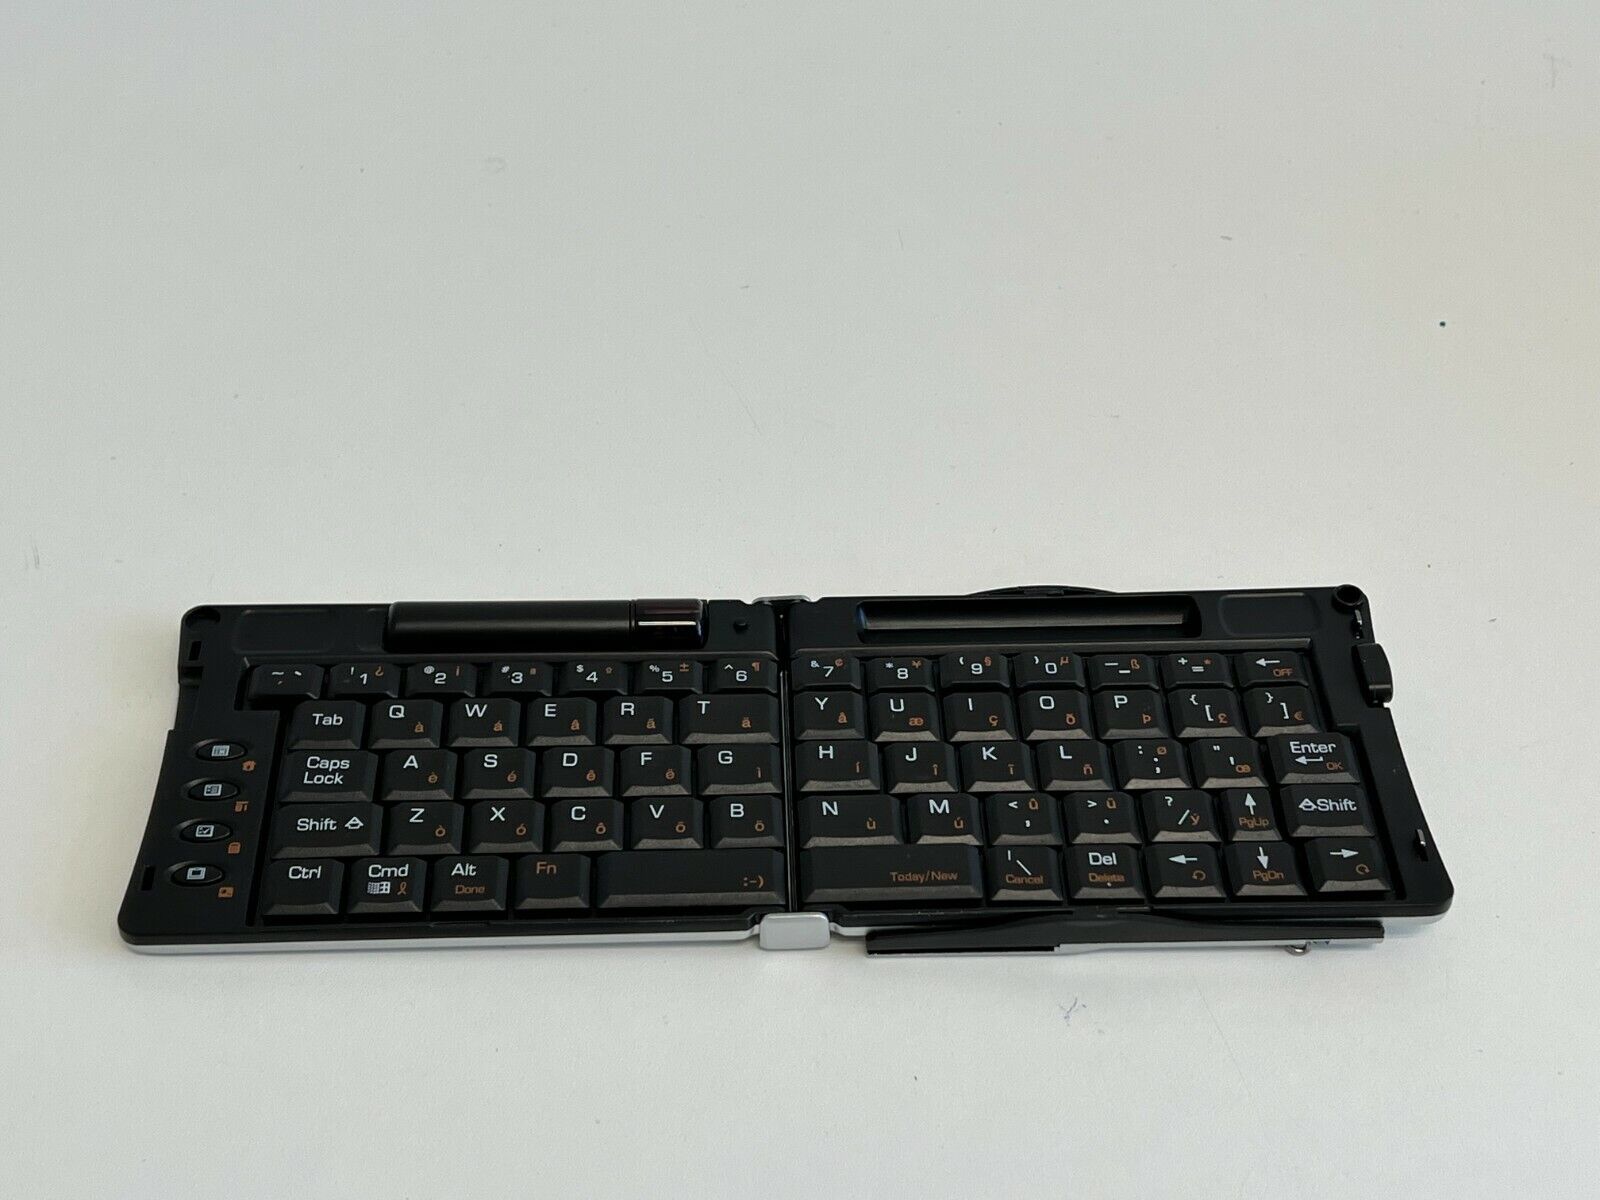 PP20:  Lot of 4 Belkin F8U1500 Universal Wireless Keyboard Universal Compatible